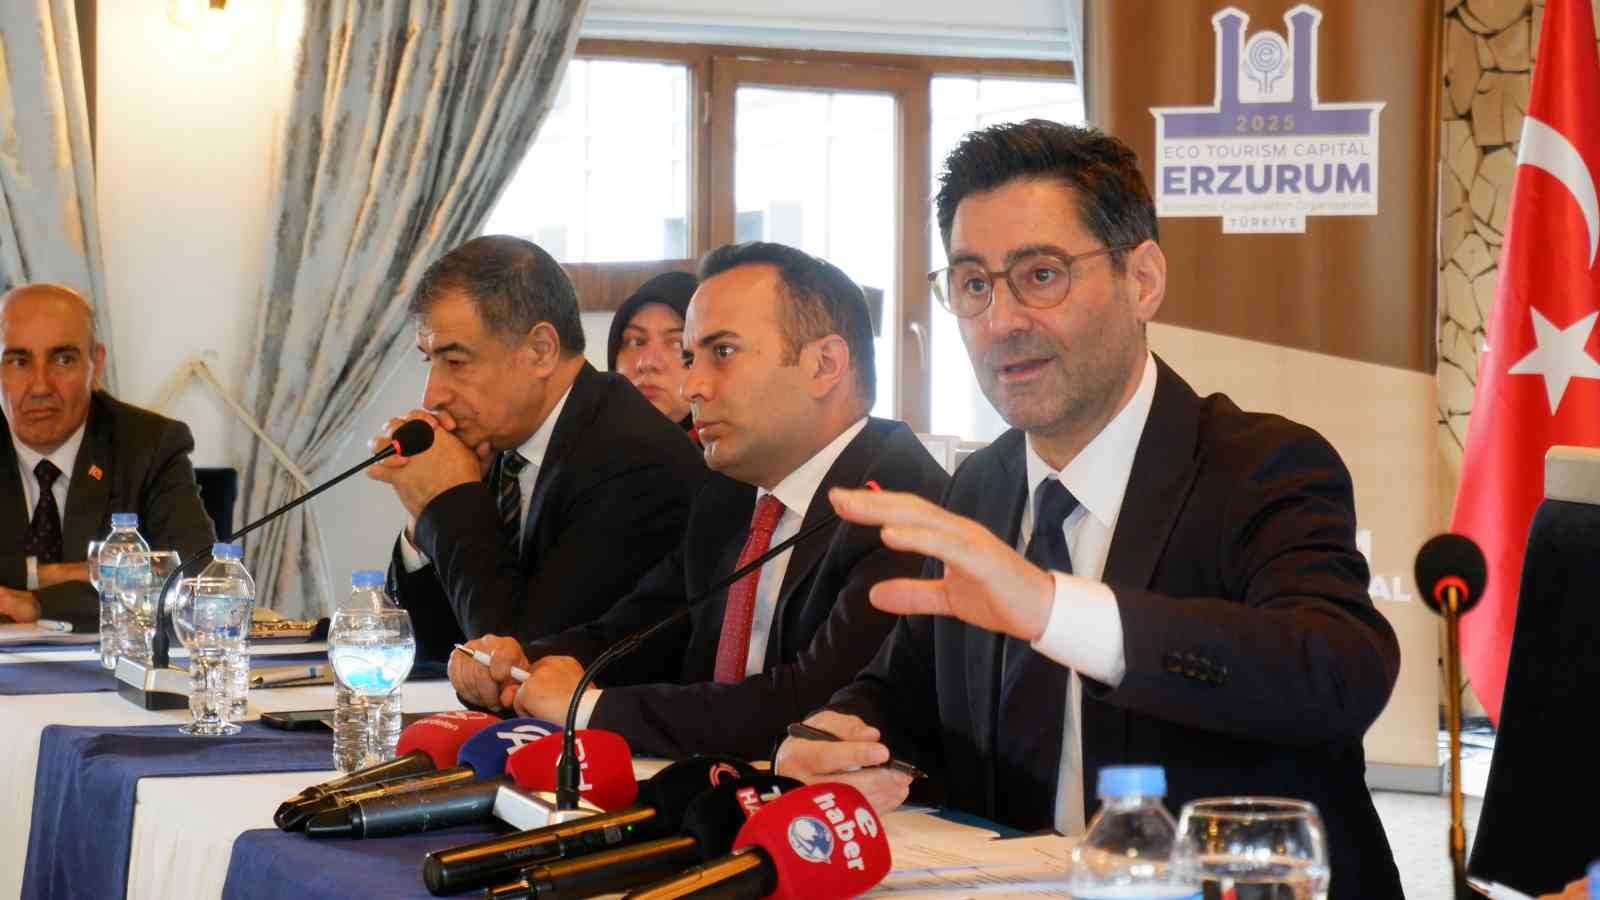 Çığlık: “EİT 2025 Erzurum’a çok şeyler katacak”
